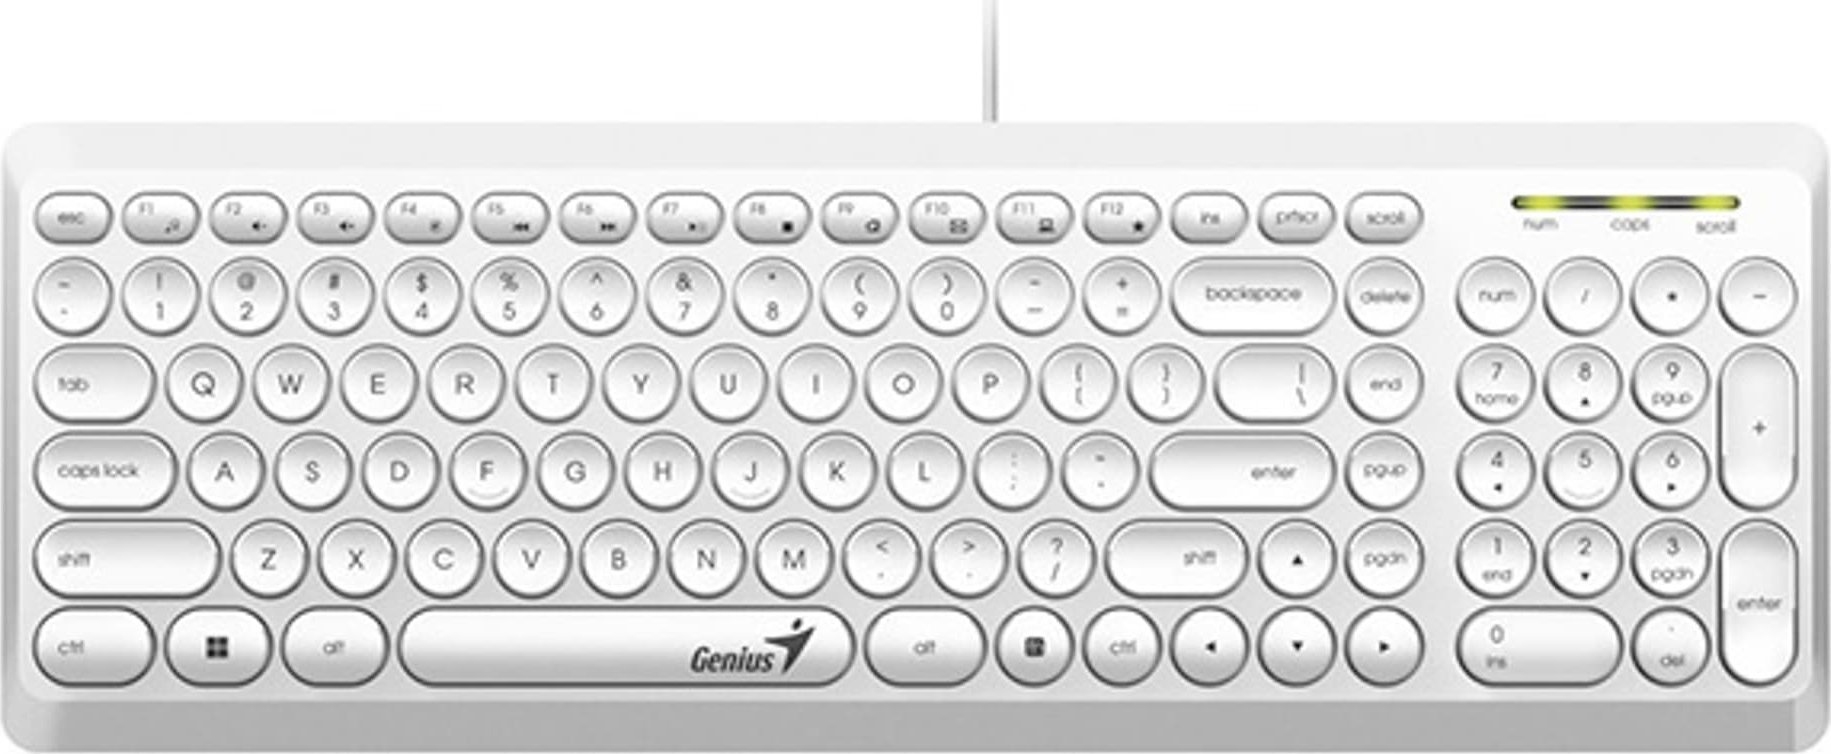 Tastaturi - Tastatură Genius Genius Slimstar Q200, tastatură CZ/SK, clasică, silențioasă, tip cu fir (USB), albă